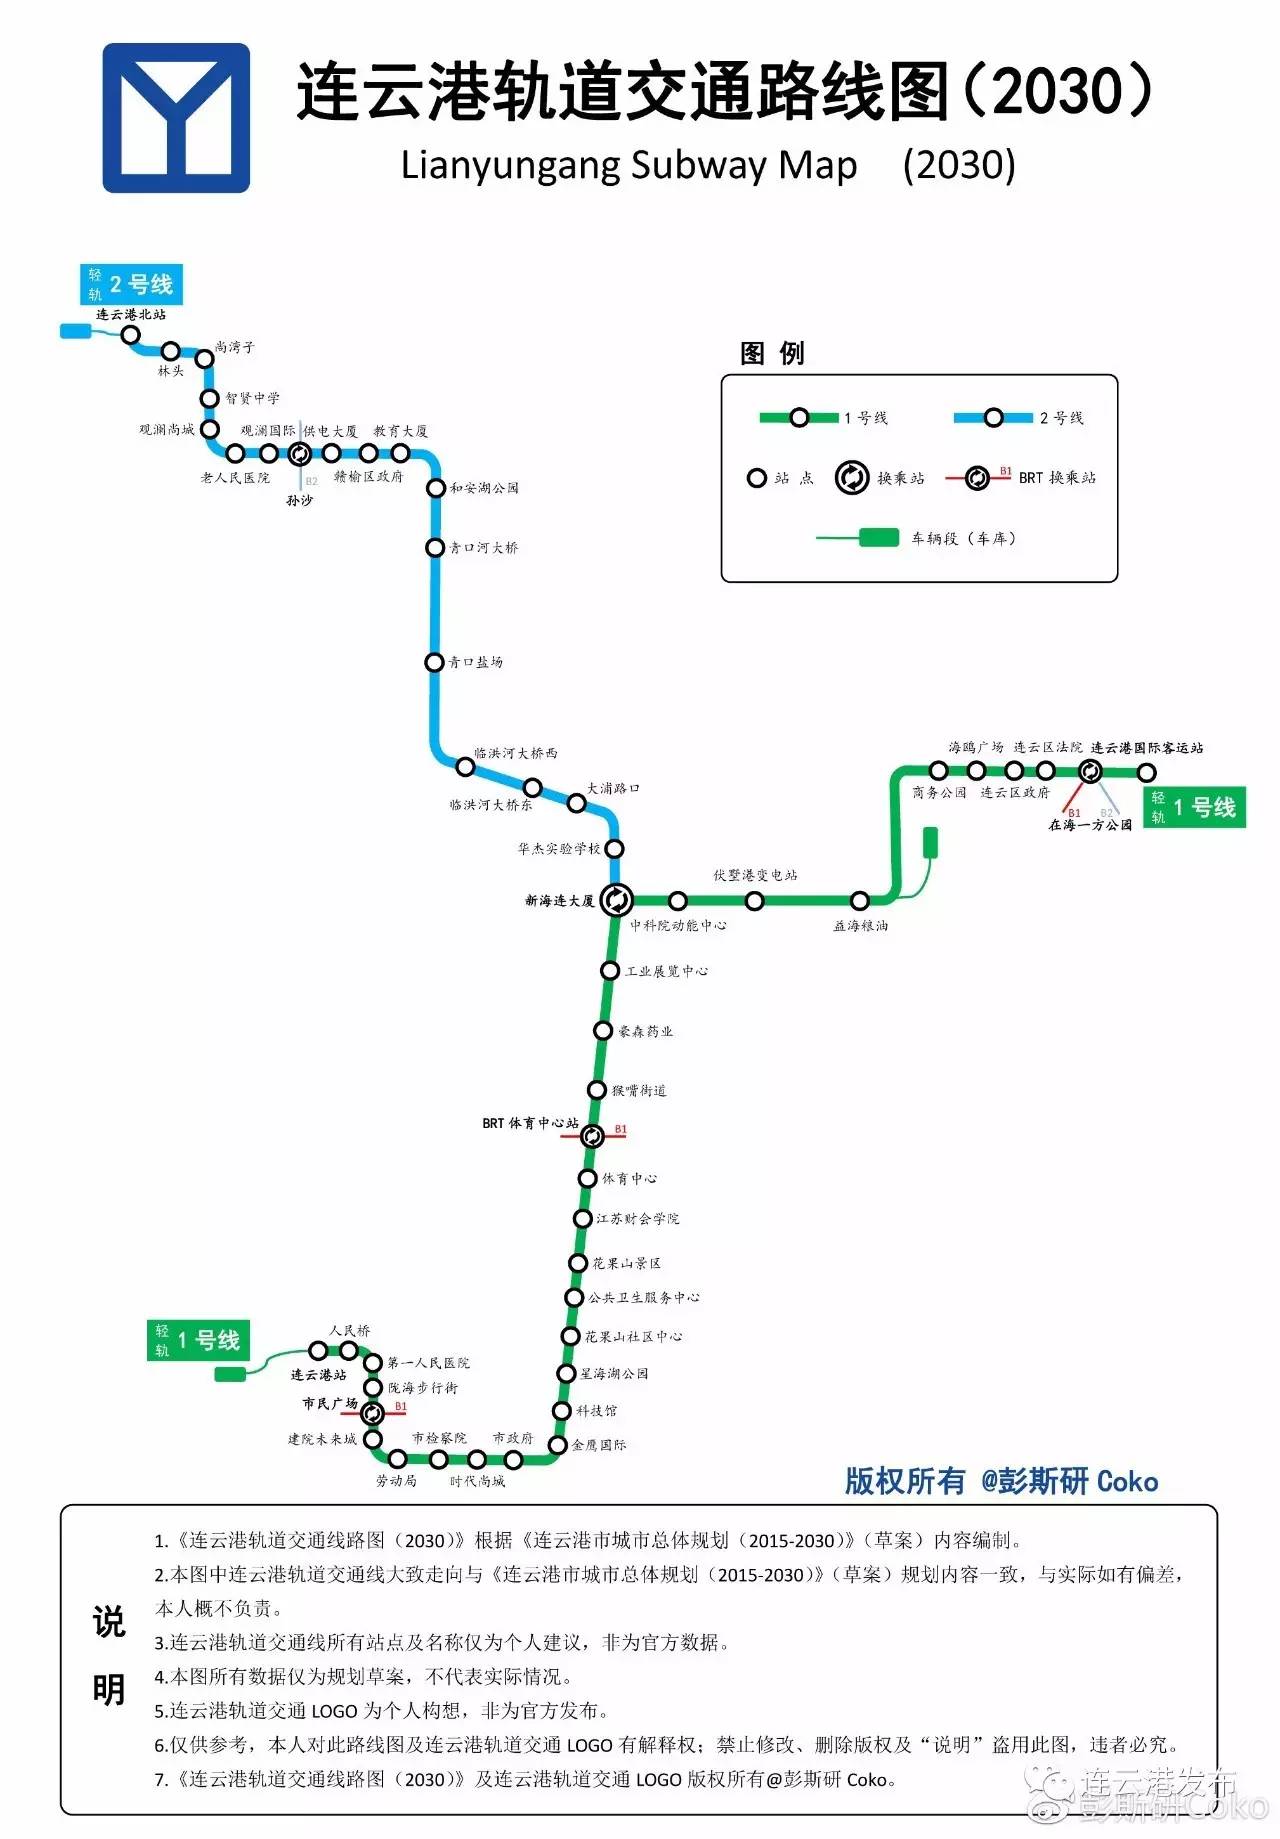 厉害了网友绘制2030年连云港轨道交通线路图一起来看看